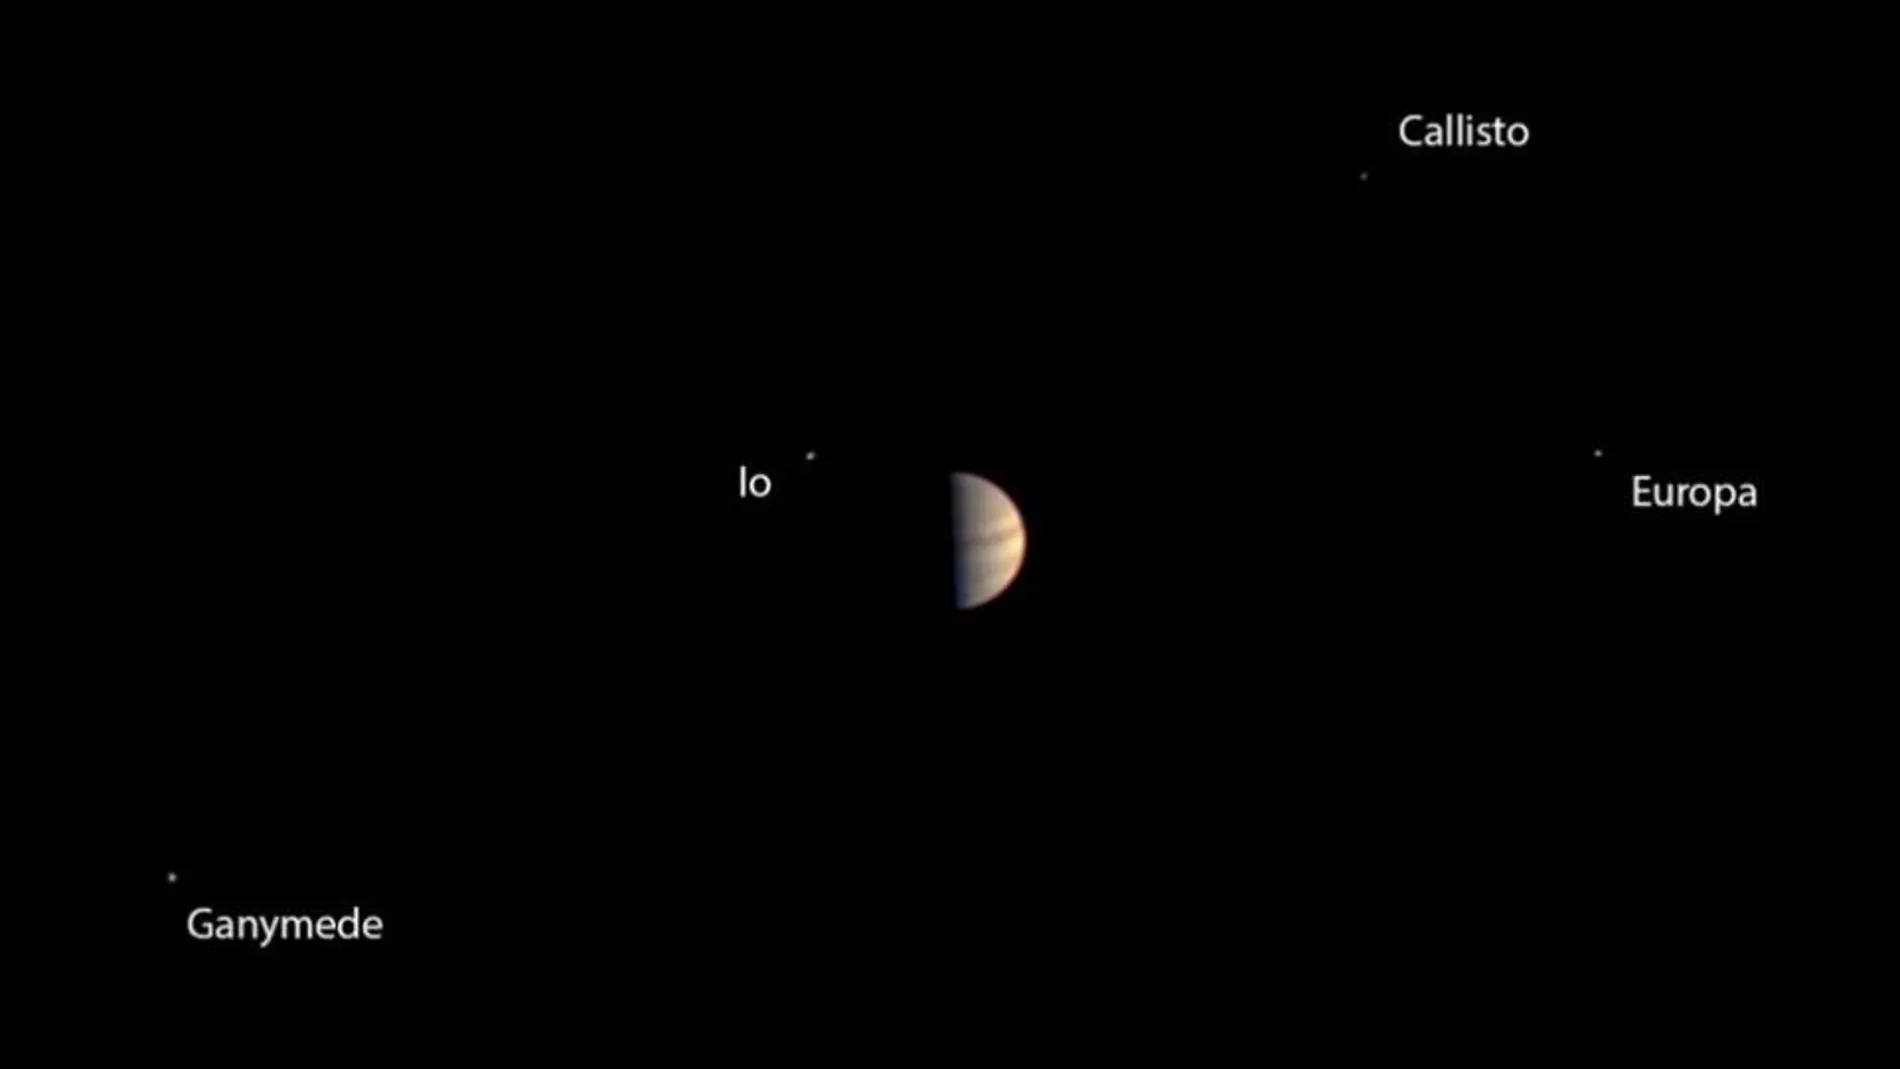 La última imagen tomada por la cámara de Juno antes de prepararse para la entrada en la órbita de Júpiter